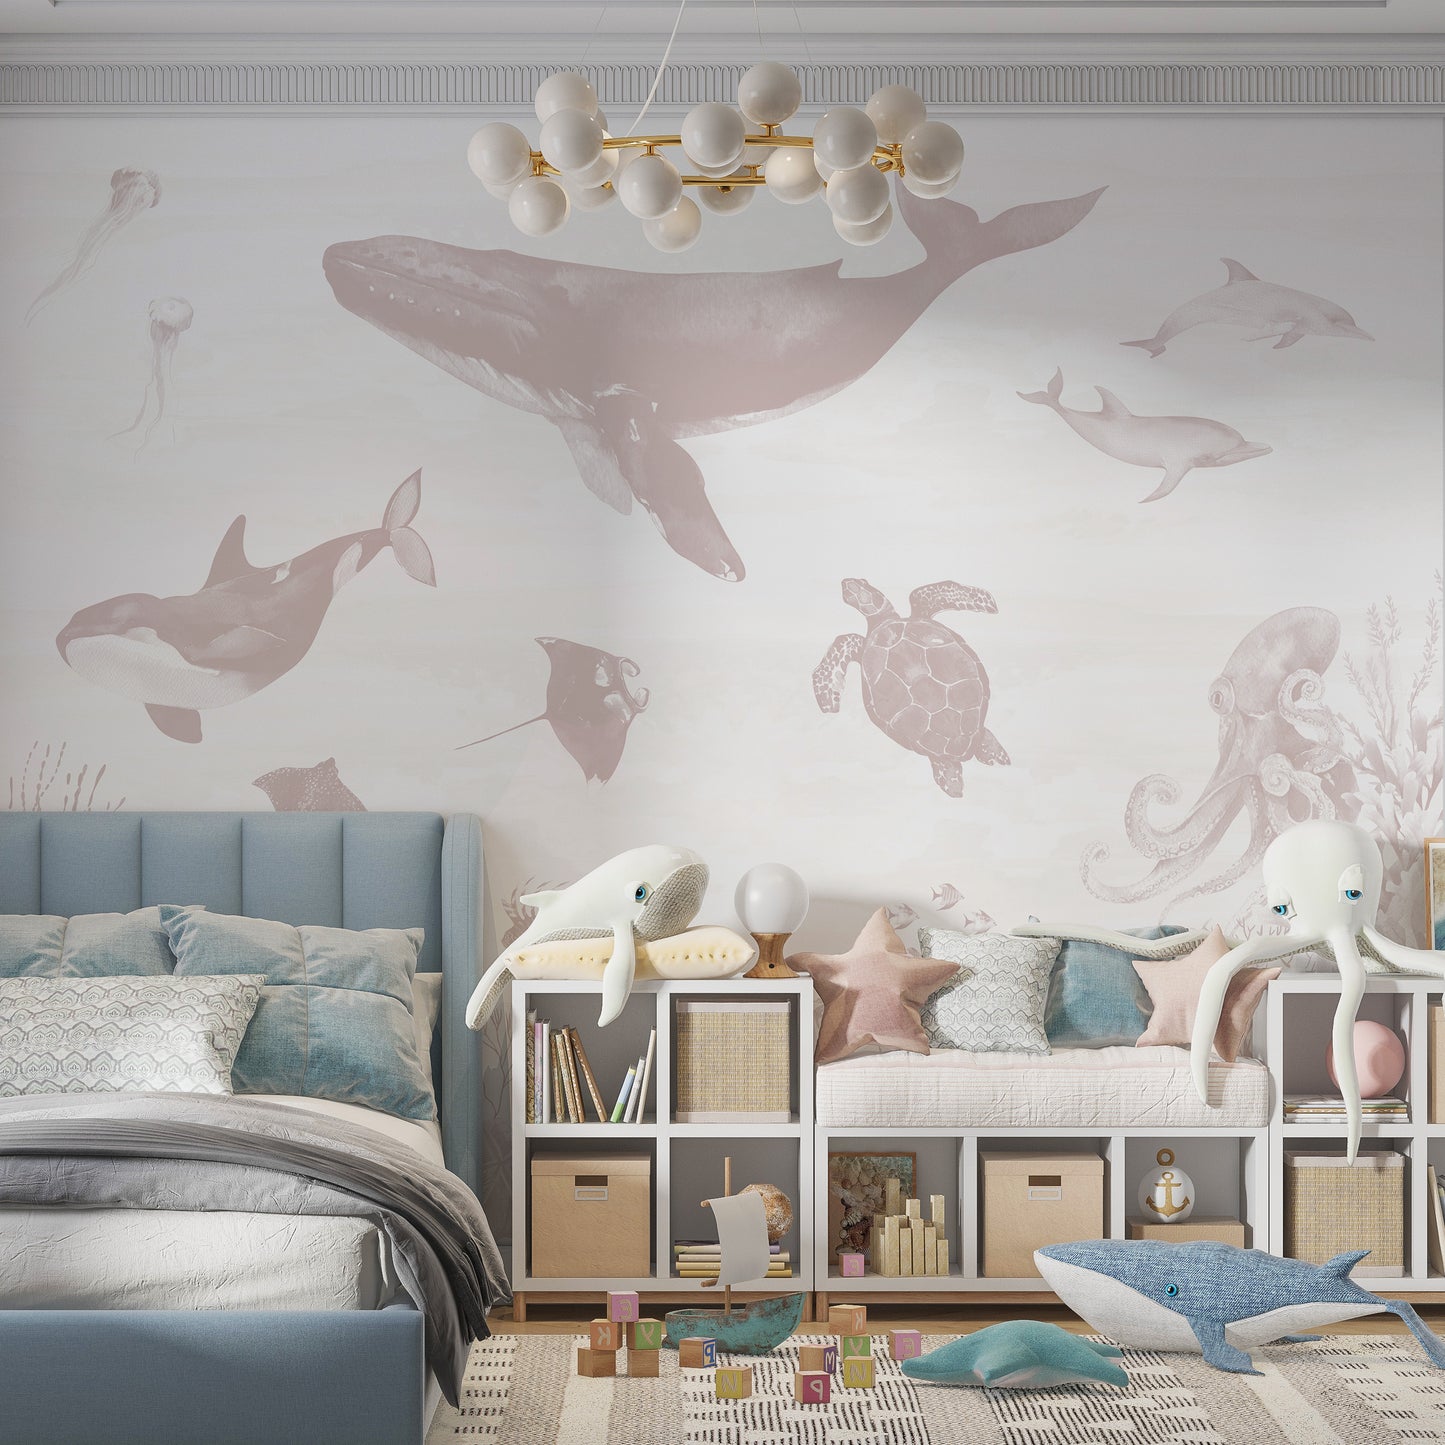 Load image into Gallery viewer, Ocean Magic Wallpaper Mural | Rose - Munks and Me Wallpaper
